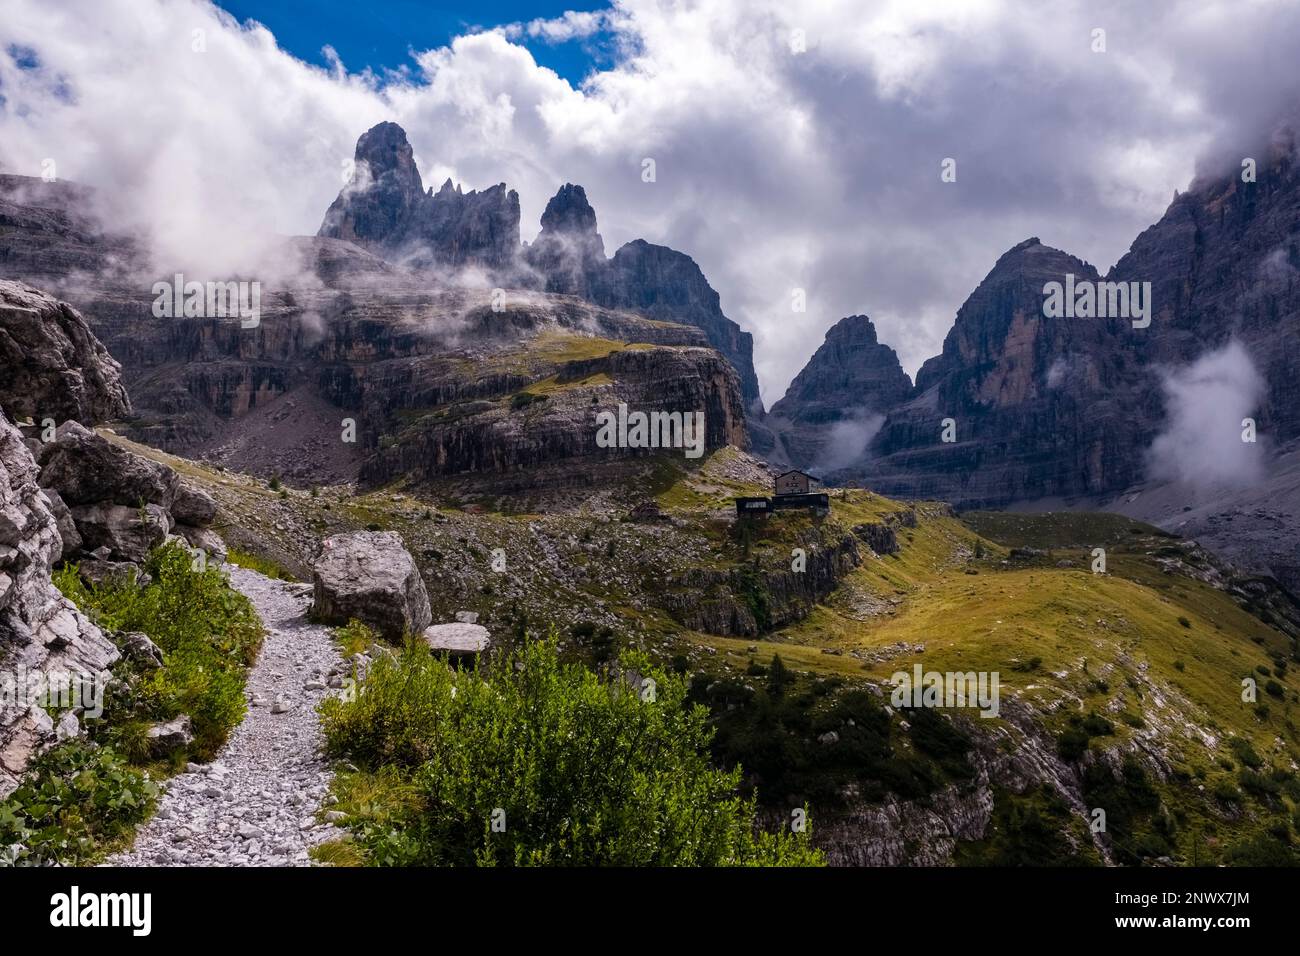 Un sentiero escursionistico nelle Dolomiti di Brenta che conduce al rifugio Maria e Alberto al Brentei, cime in lontananza parzialmente avvolte da nuvole Foto Stock